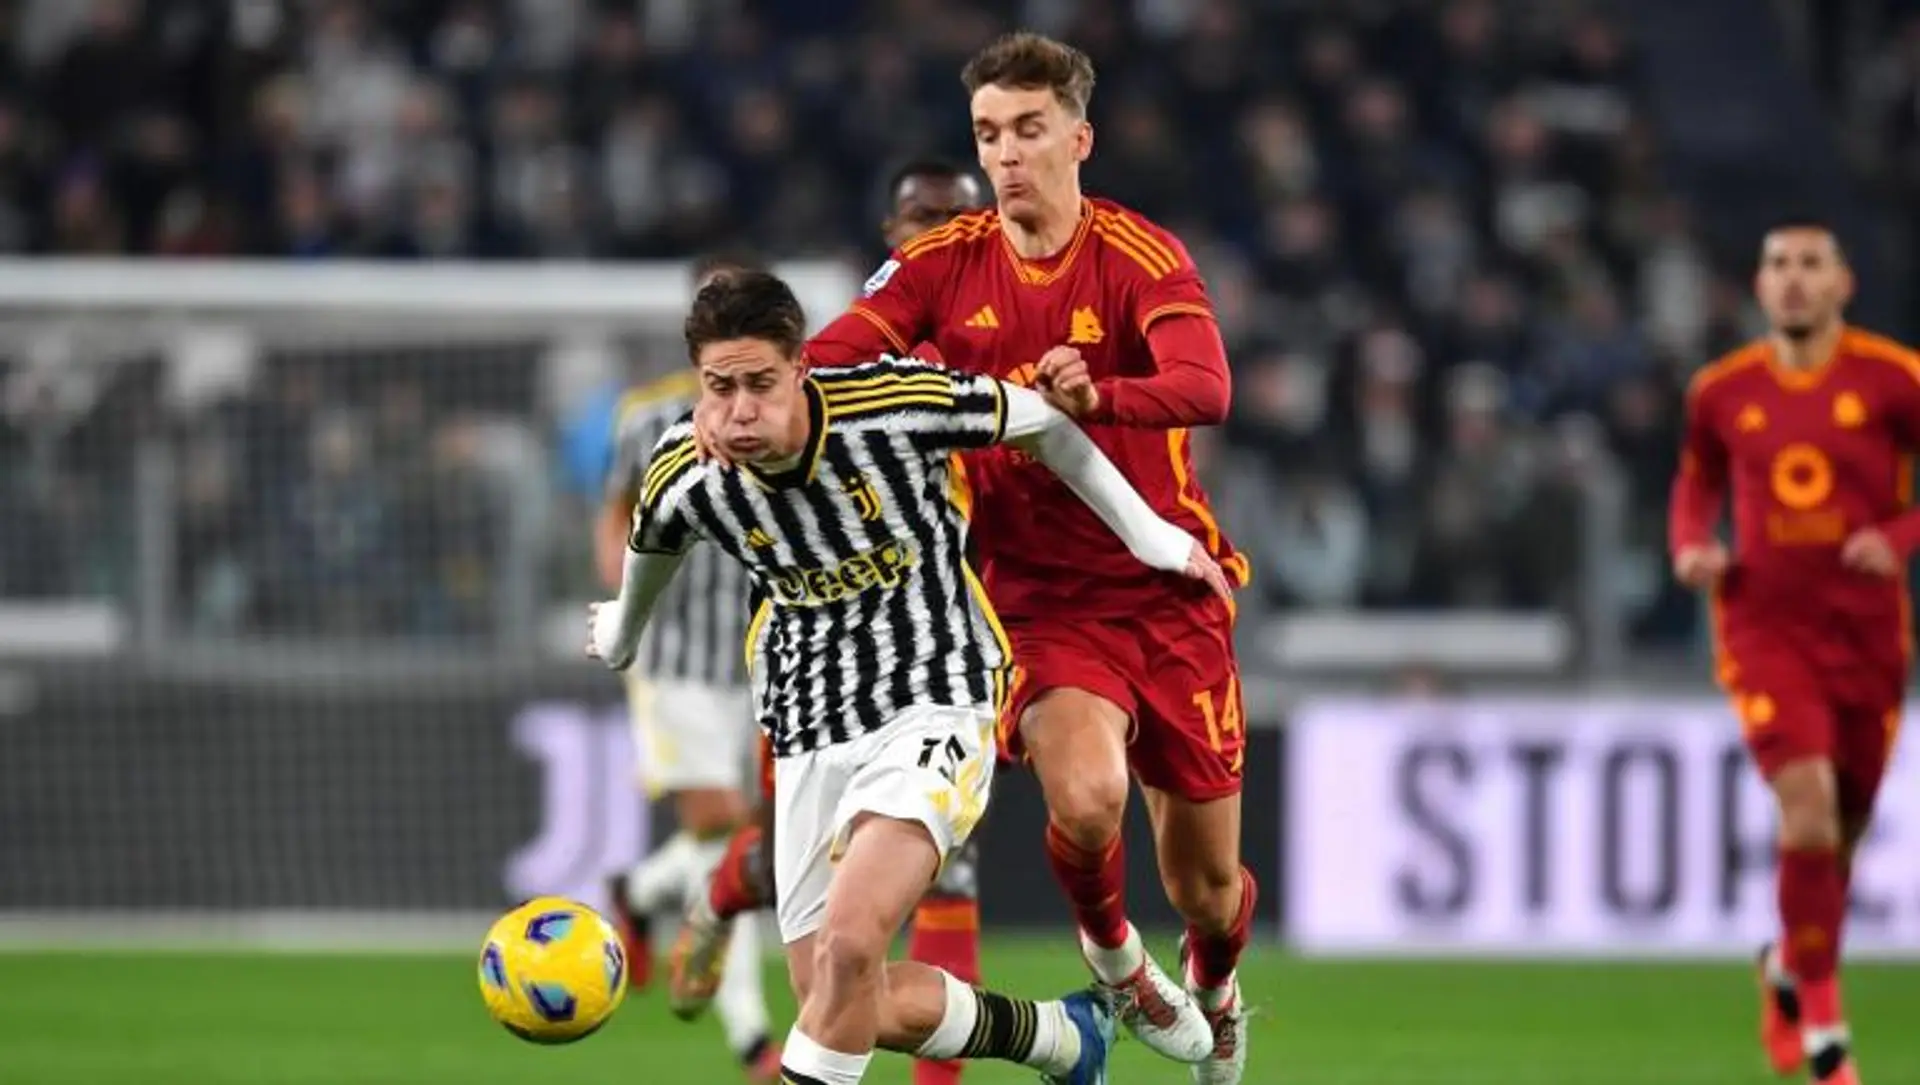 Juventus-Roma 0-0 all’intervallo: il racconto della prima frazione